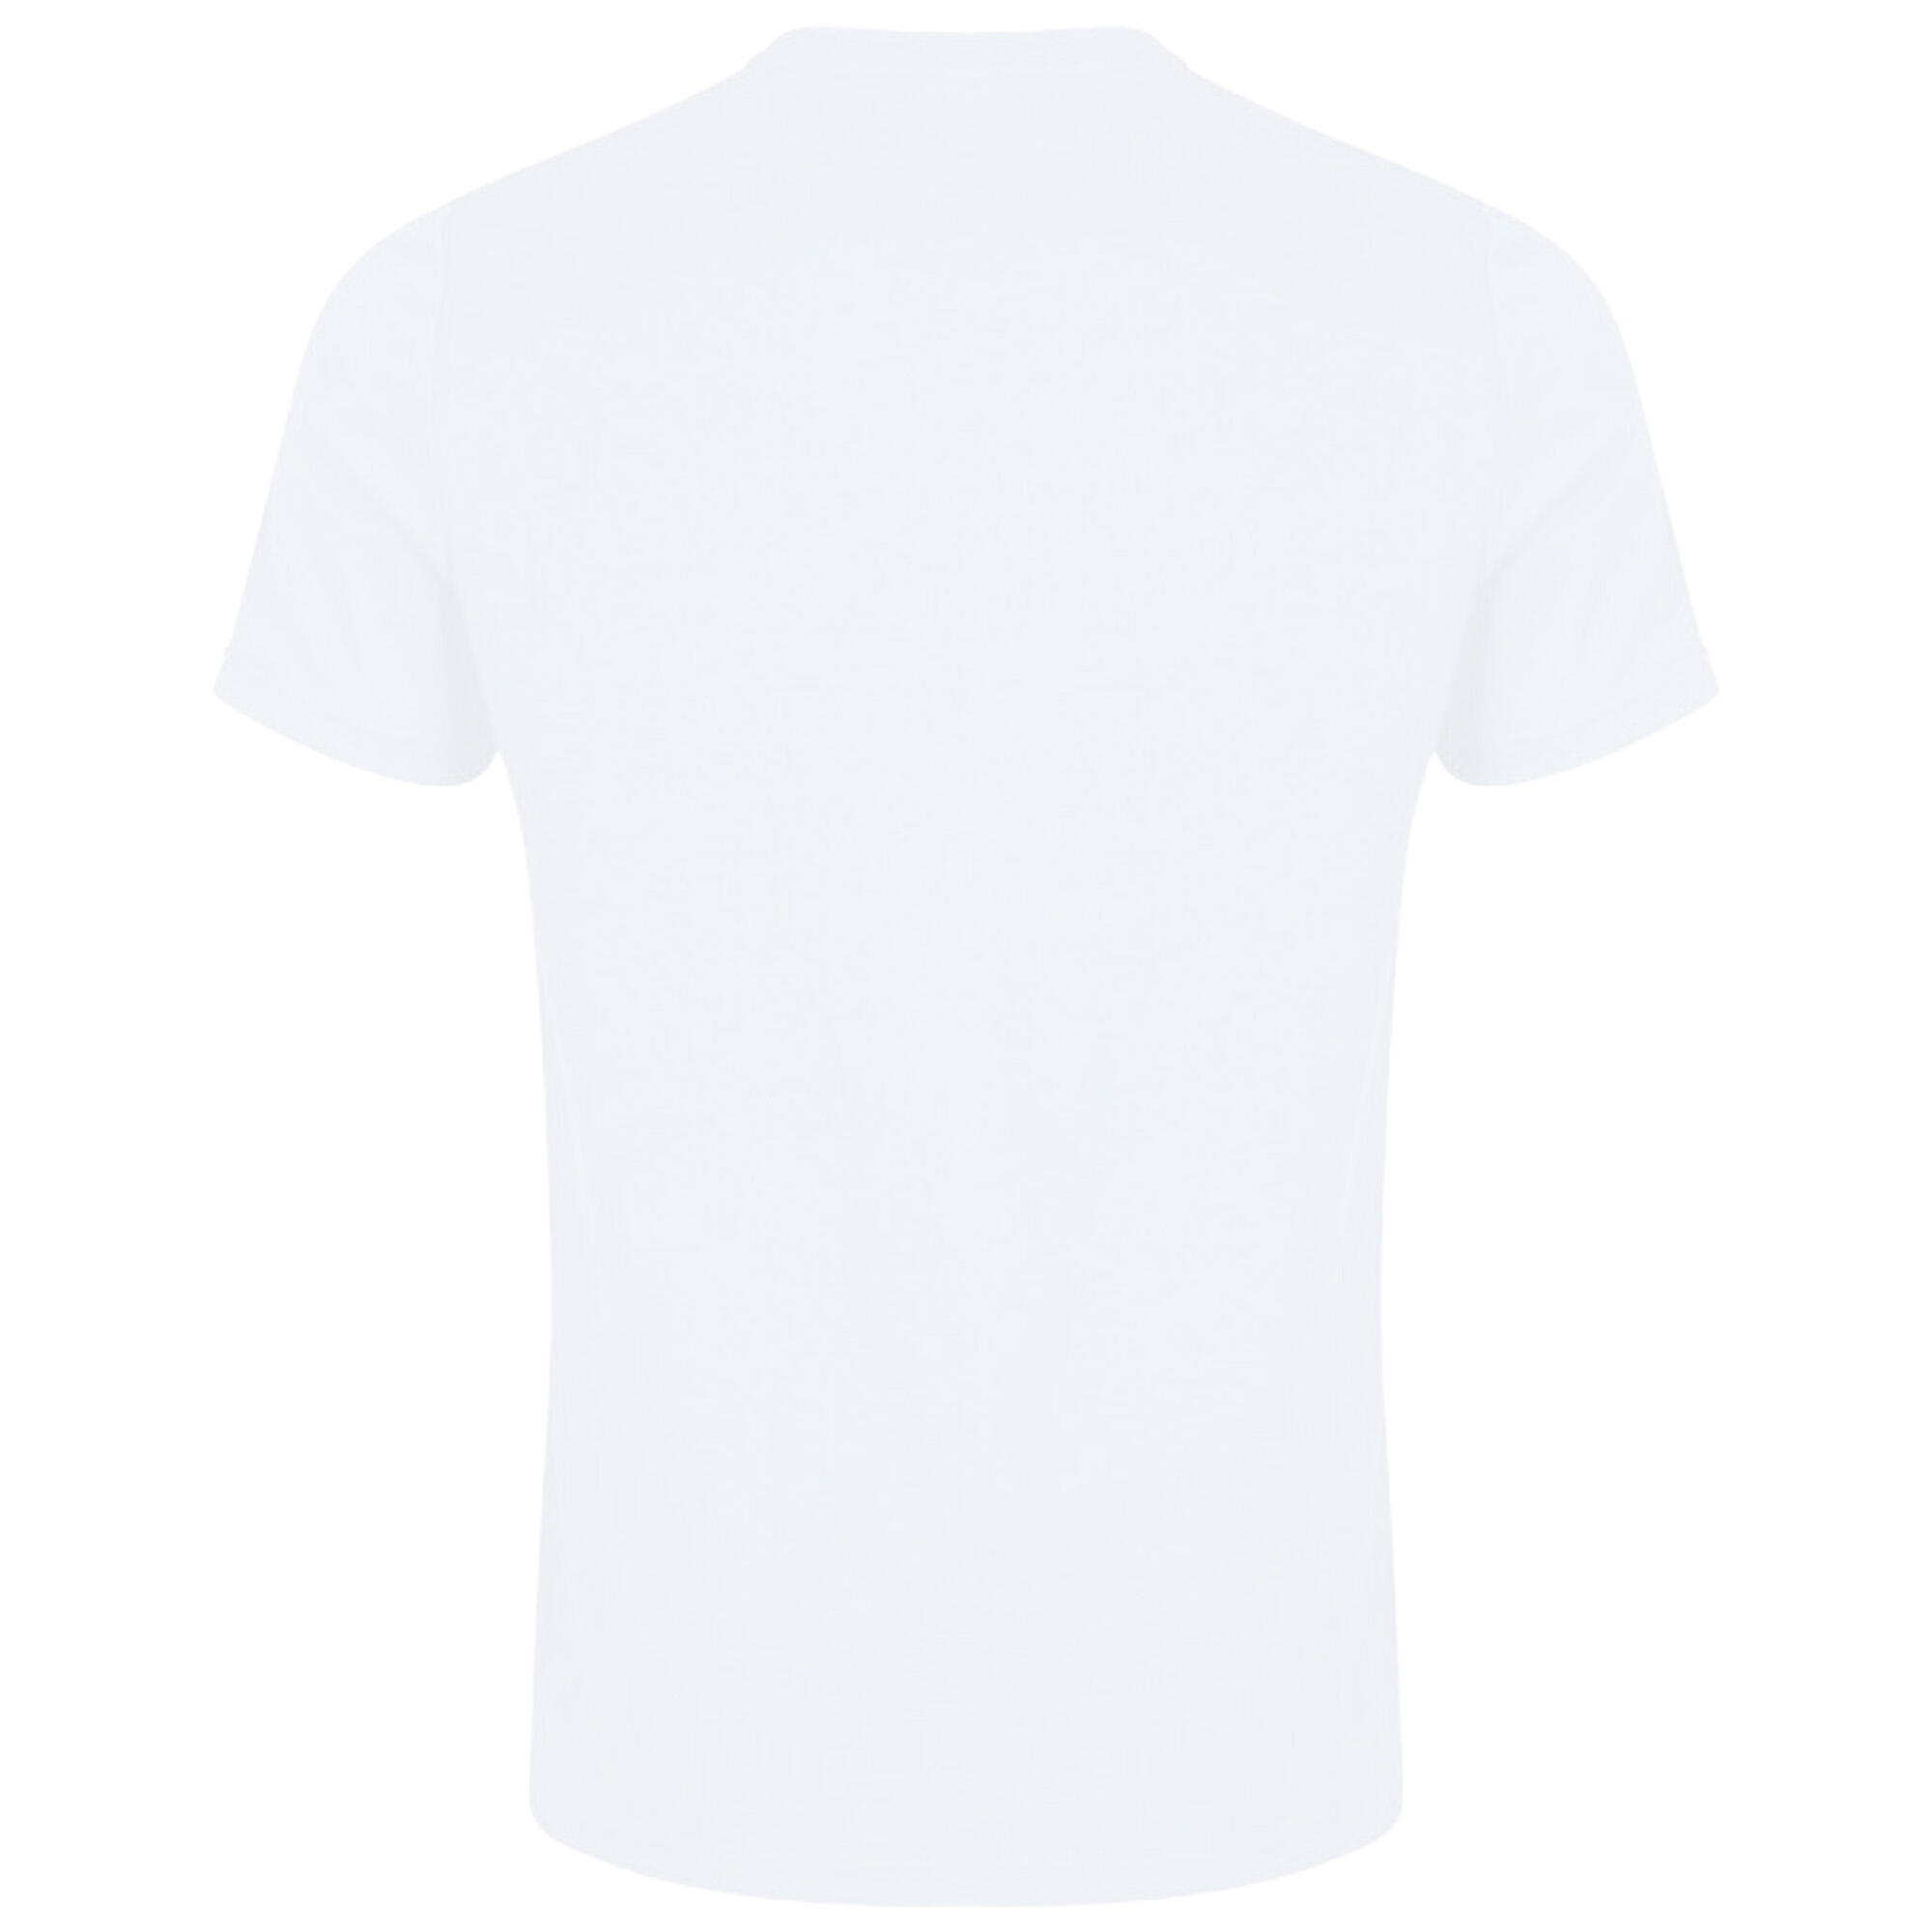 Unisex Adult Club Dry TShirt (White) 2/3